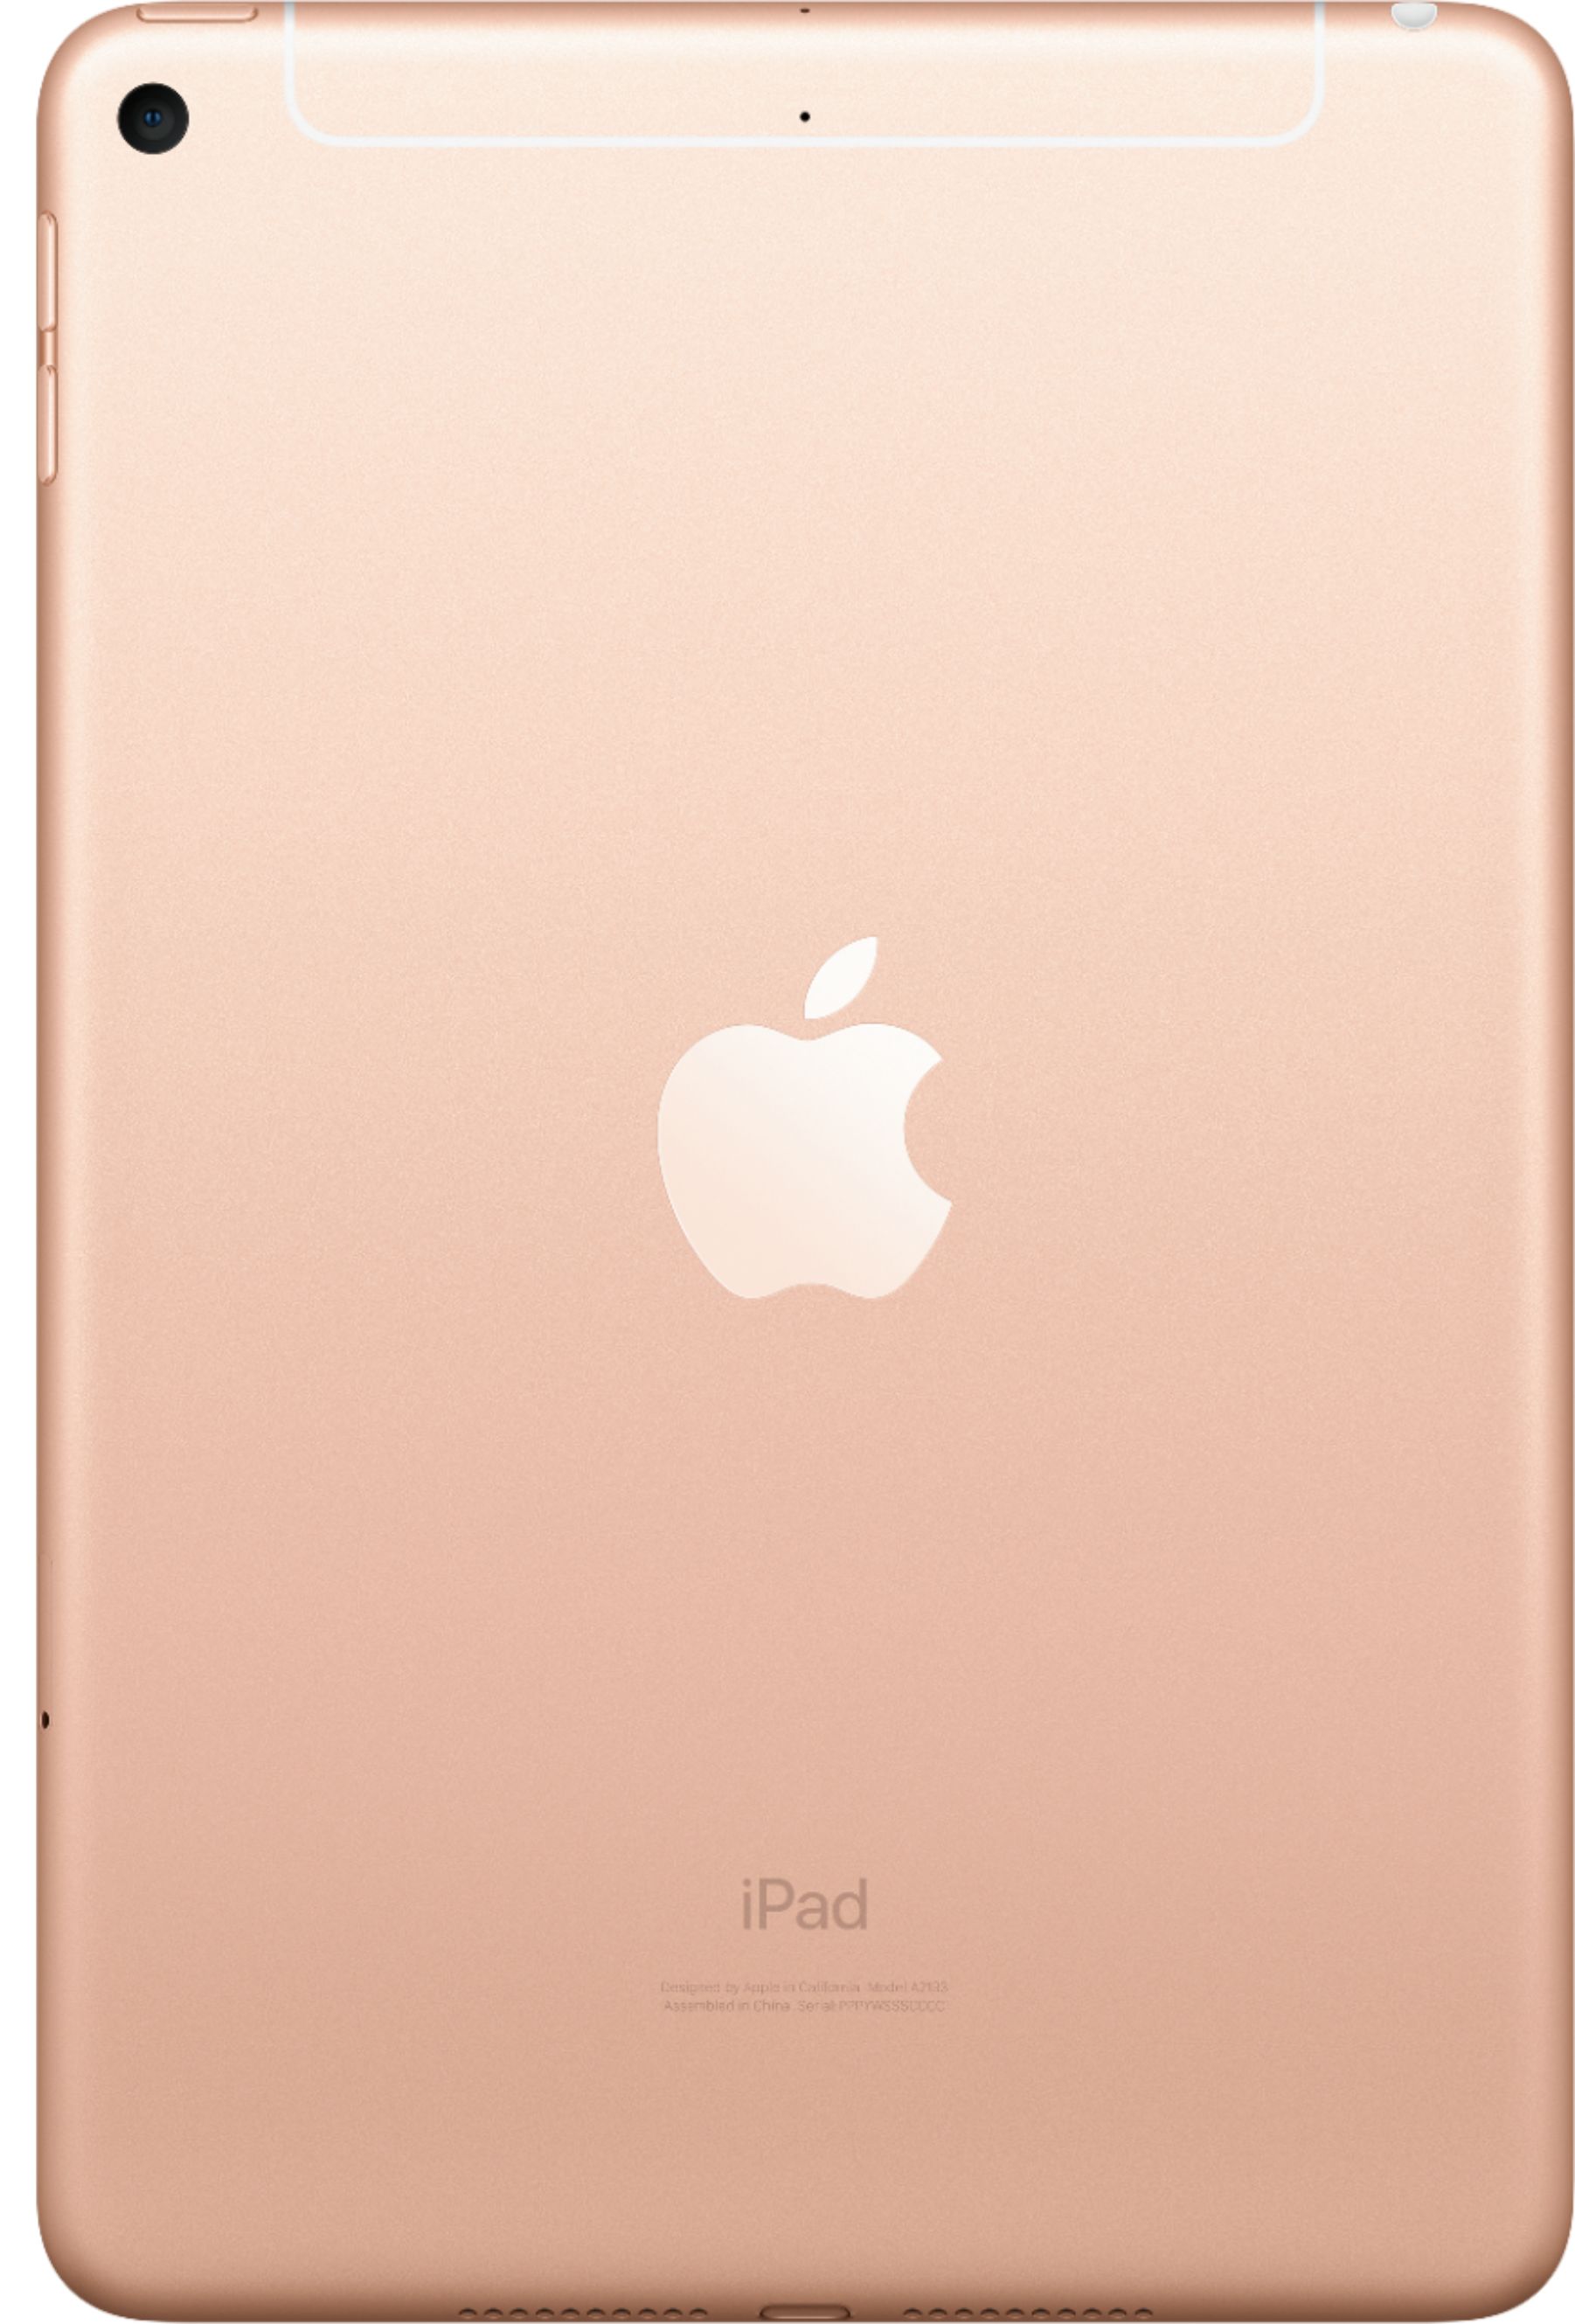 Back View: Apple iPad mini Wi-Fi + Cellular 64GB - Gold